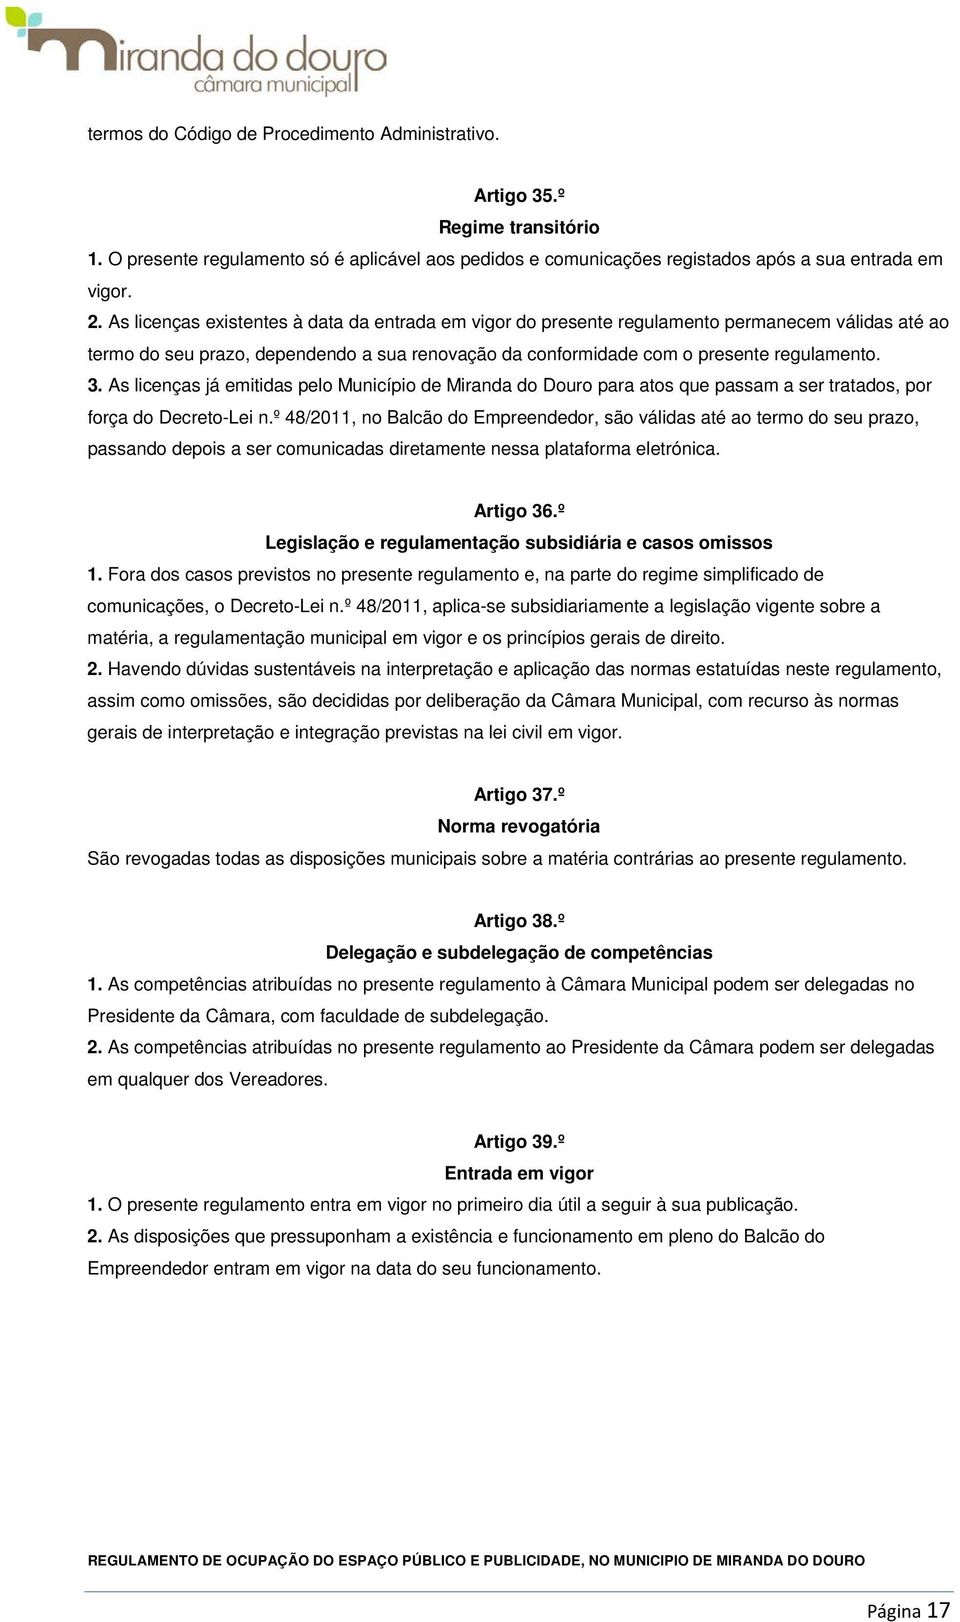 As licenças já emitidas pelo Município de Miranda do Douro para atos que passam a ser tratados, por força do Decreto-Lei n.